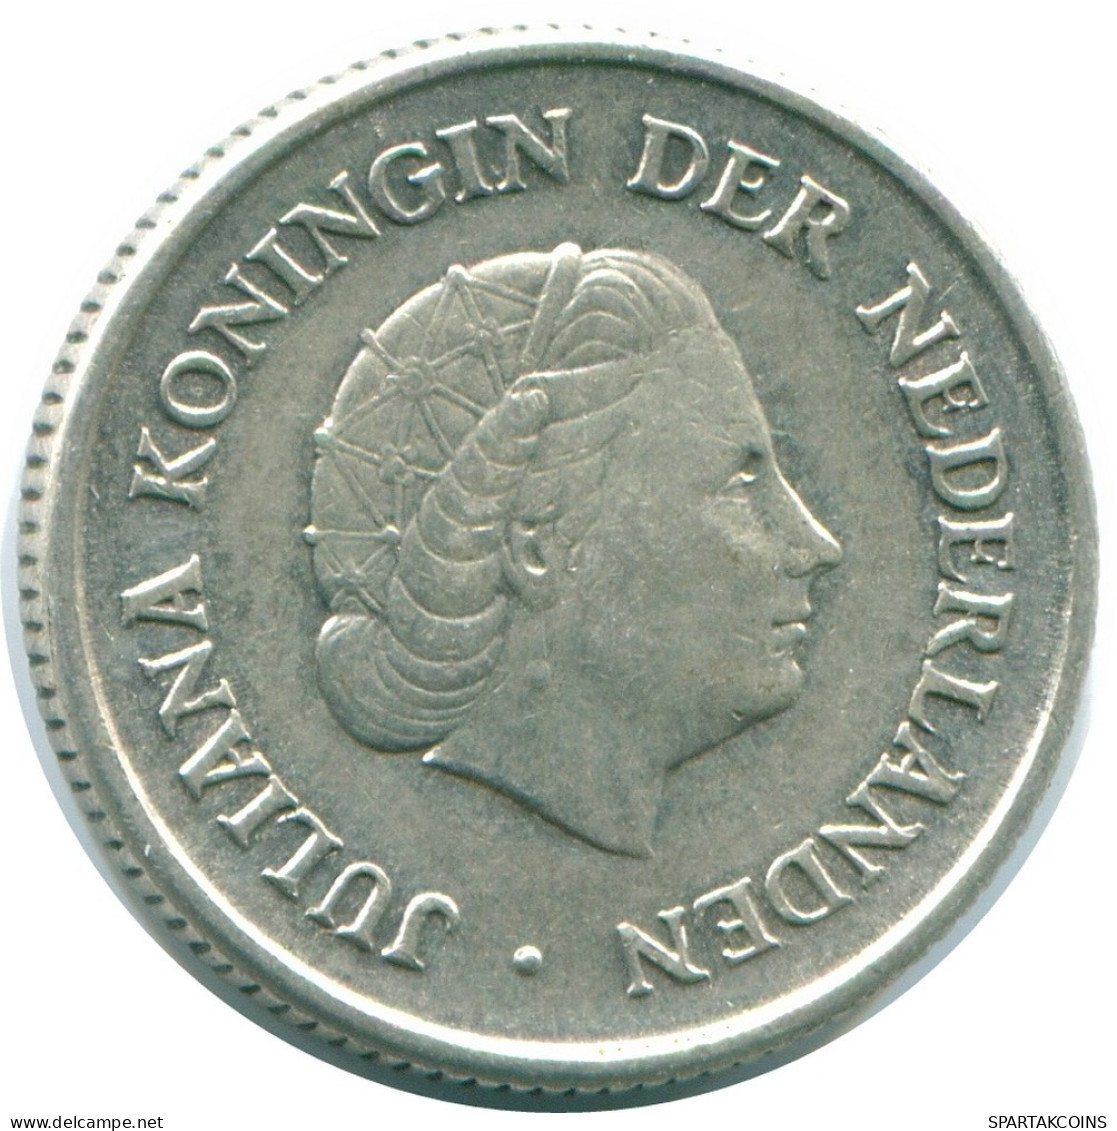 1/4 GULDEN 1967 NIEDERLÄNDISCHE ANTILLEN SILBER Koloniale Münze #NL11459.4.D.A - Antilles Néerlandaises